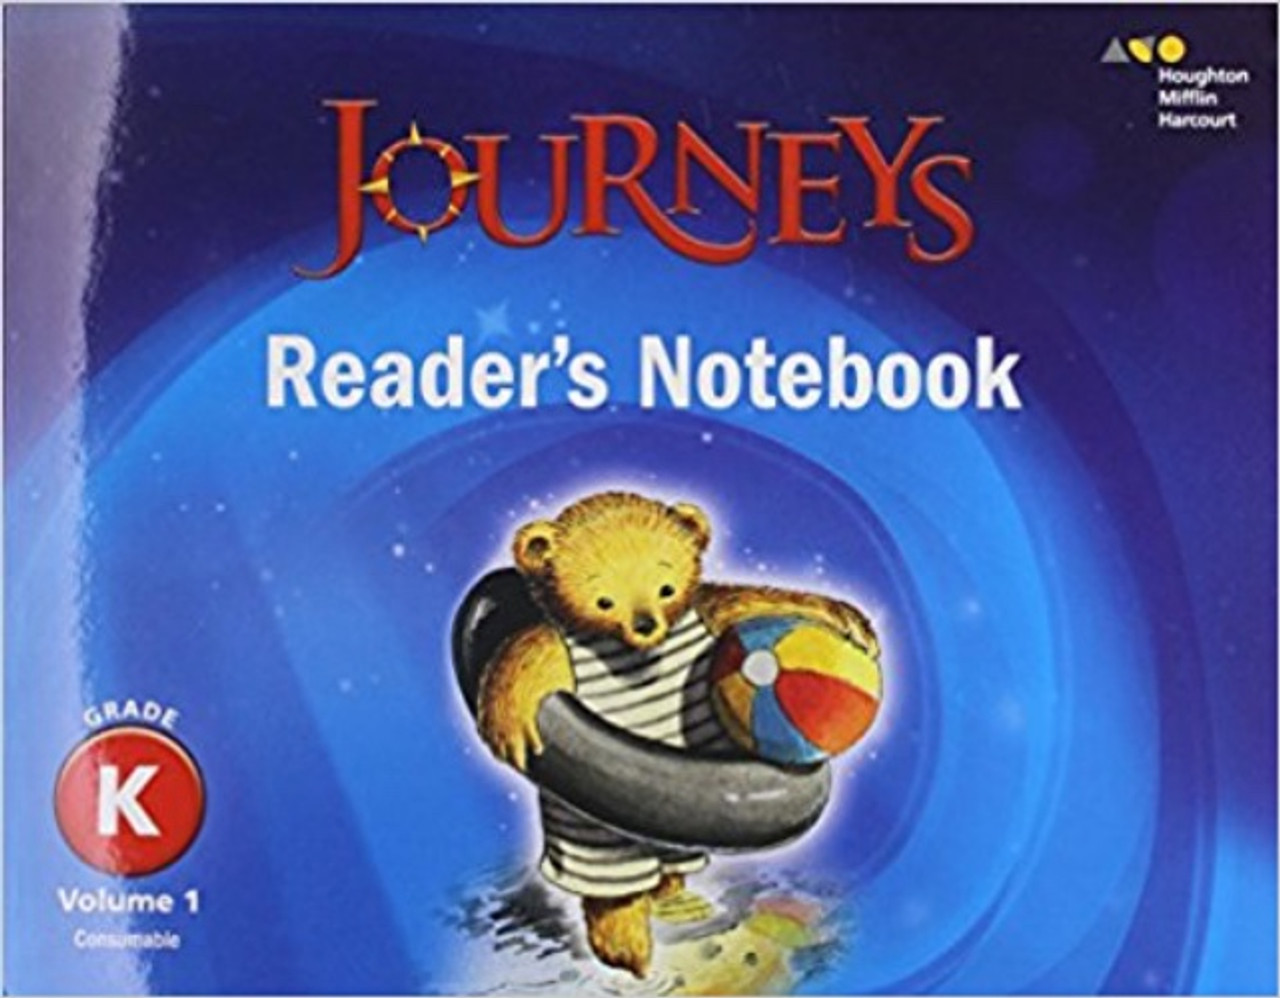 journeys reader's notebook grade kindergarten